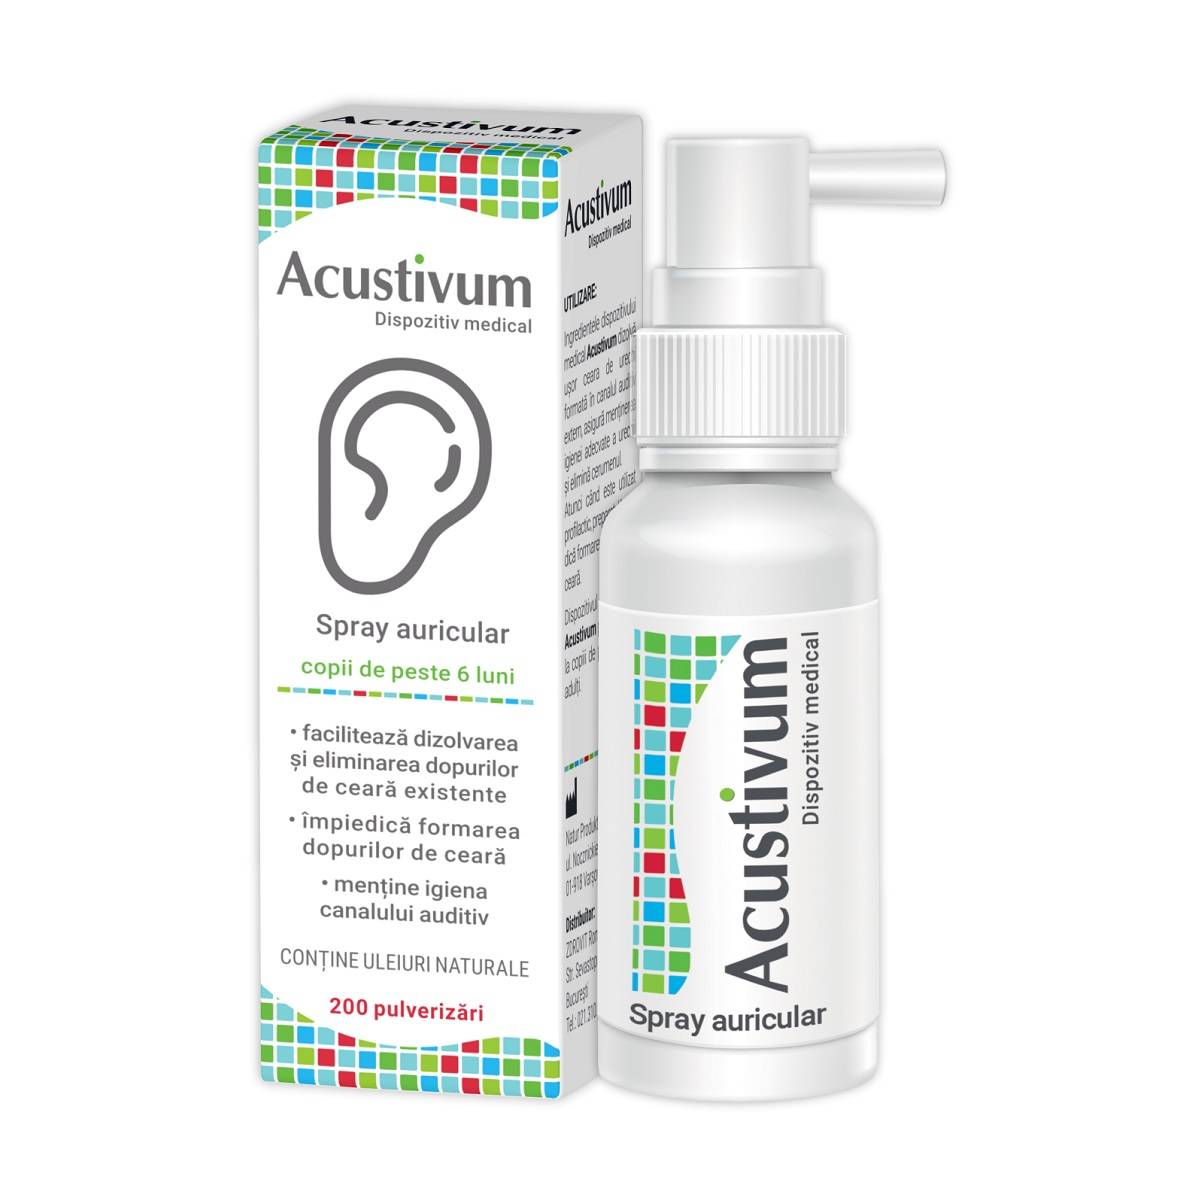 Acustivum spray auricular 20ml, zdrovit